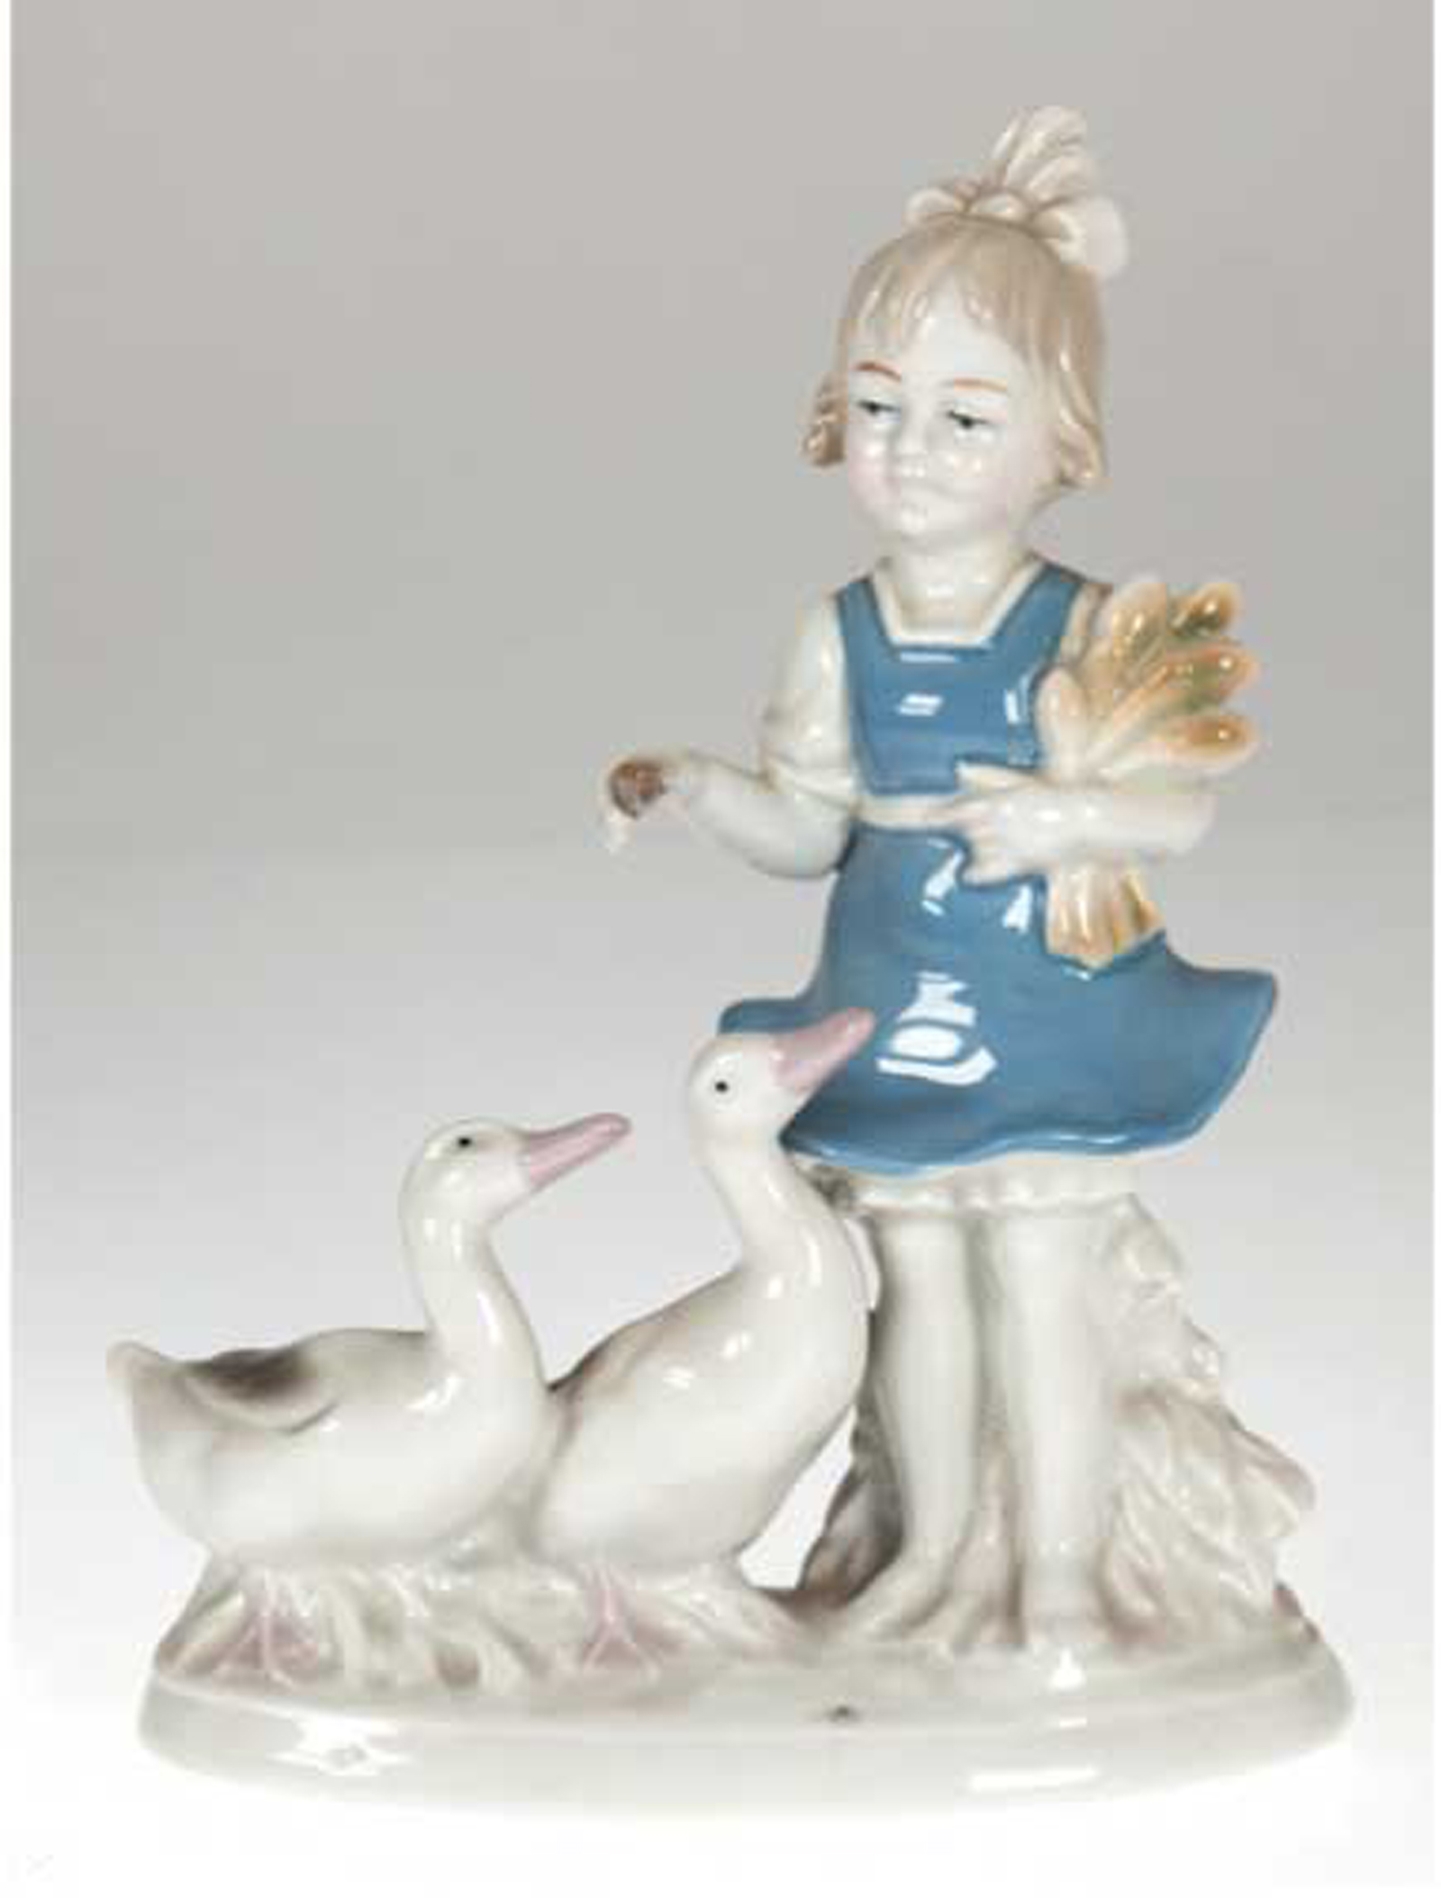 Porzellanfigur "Mädchen mit 2 Gänsen", Lippelsdorf, Preßnr. 2310, Polychrom bemalt, auf Sockel mit